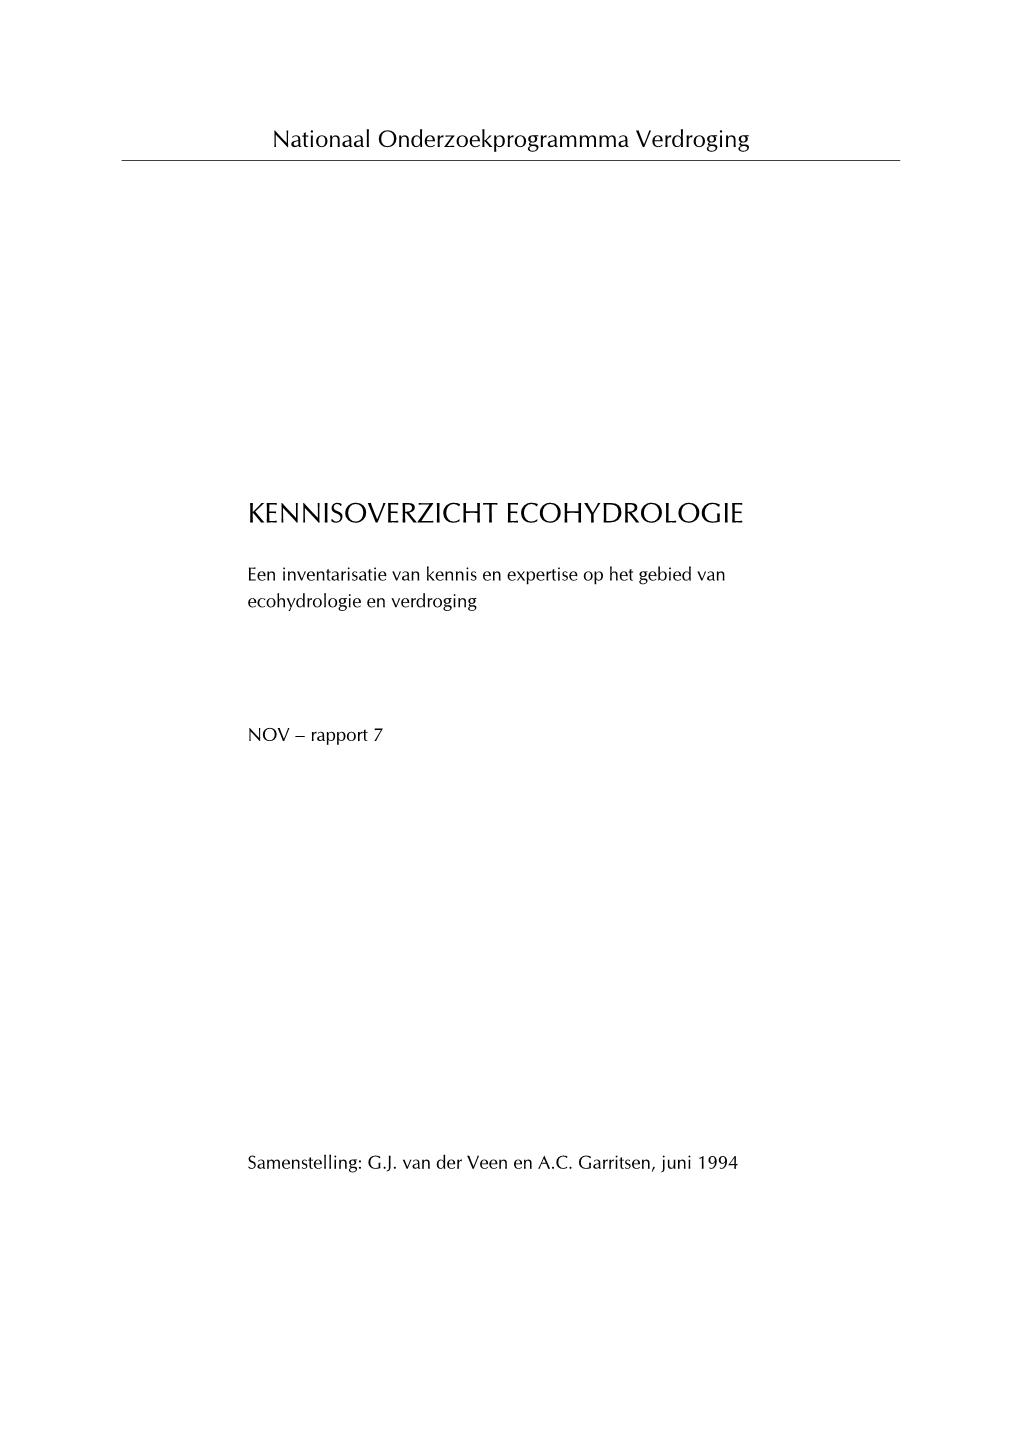 Kennisoverzicht Ecohydrologie